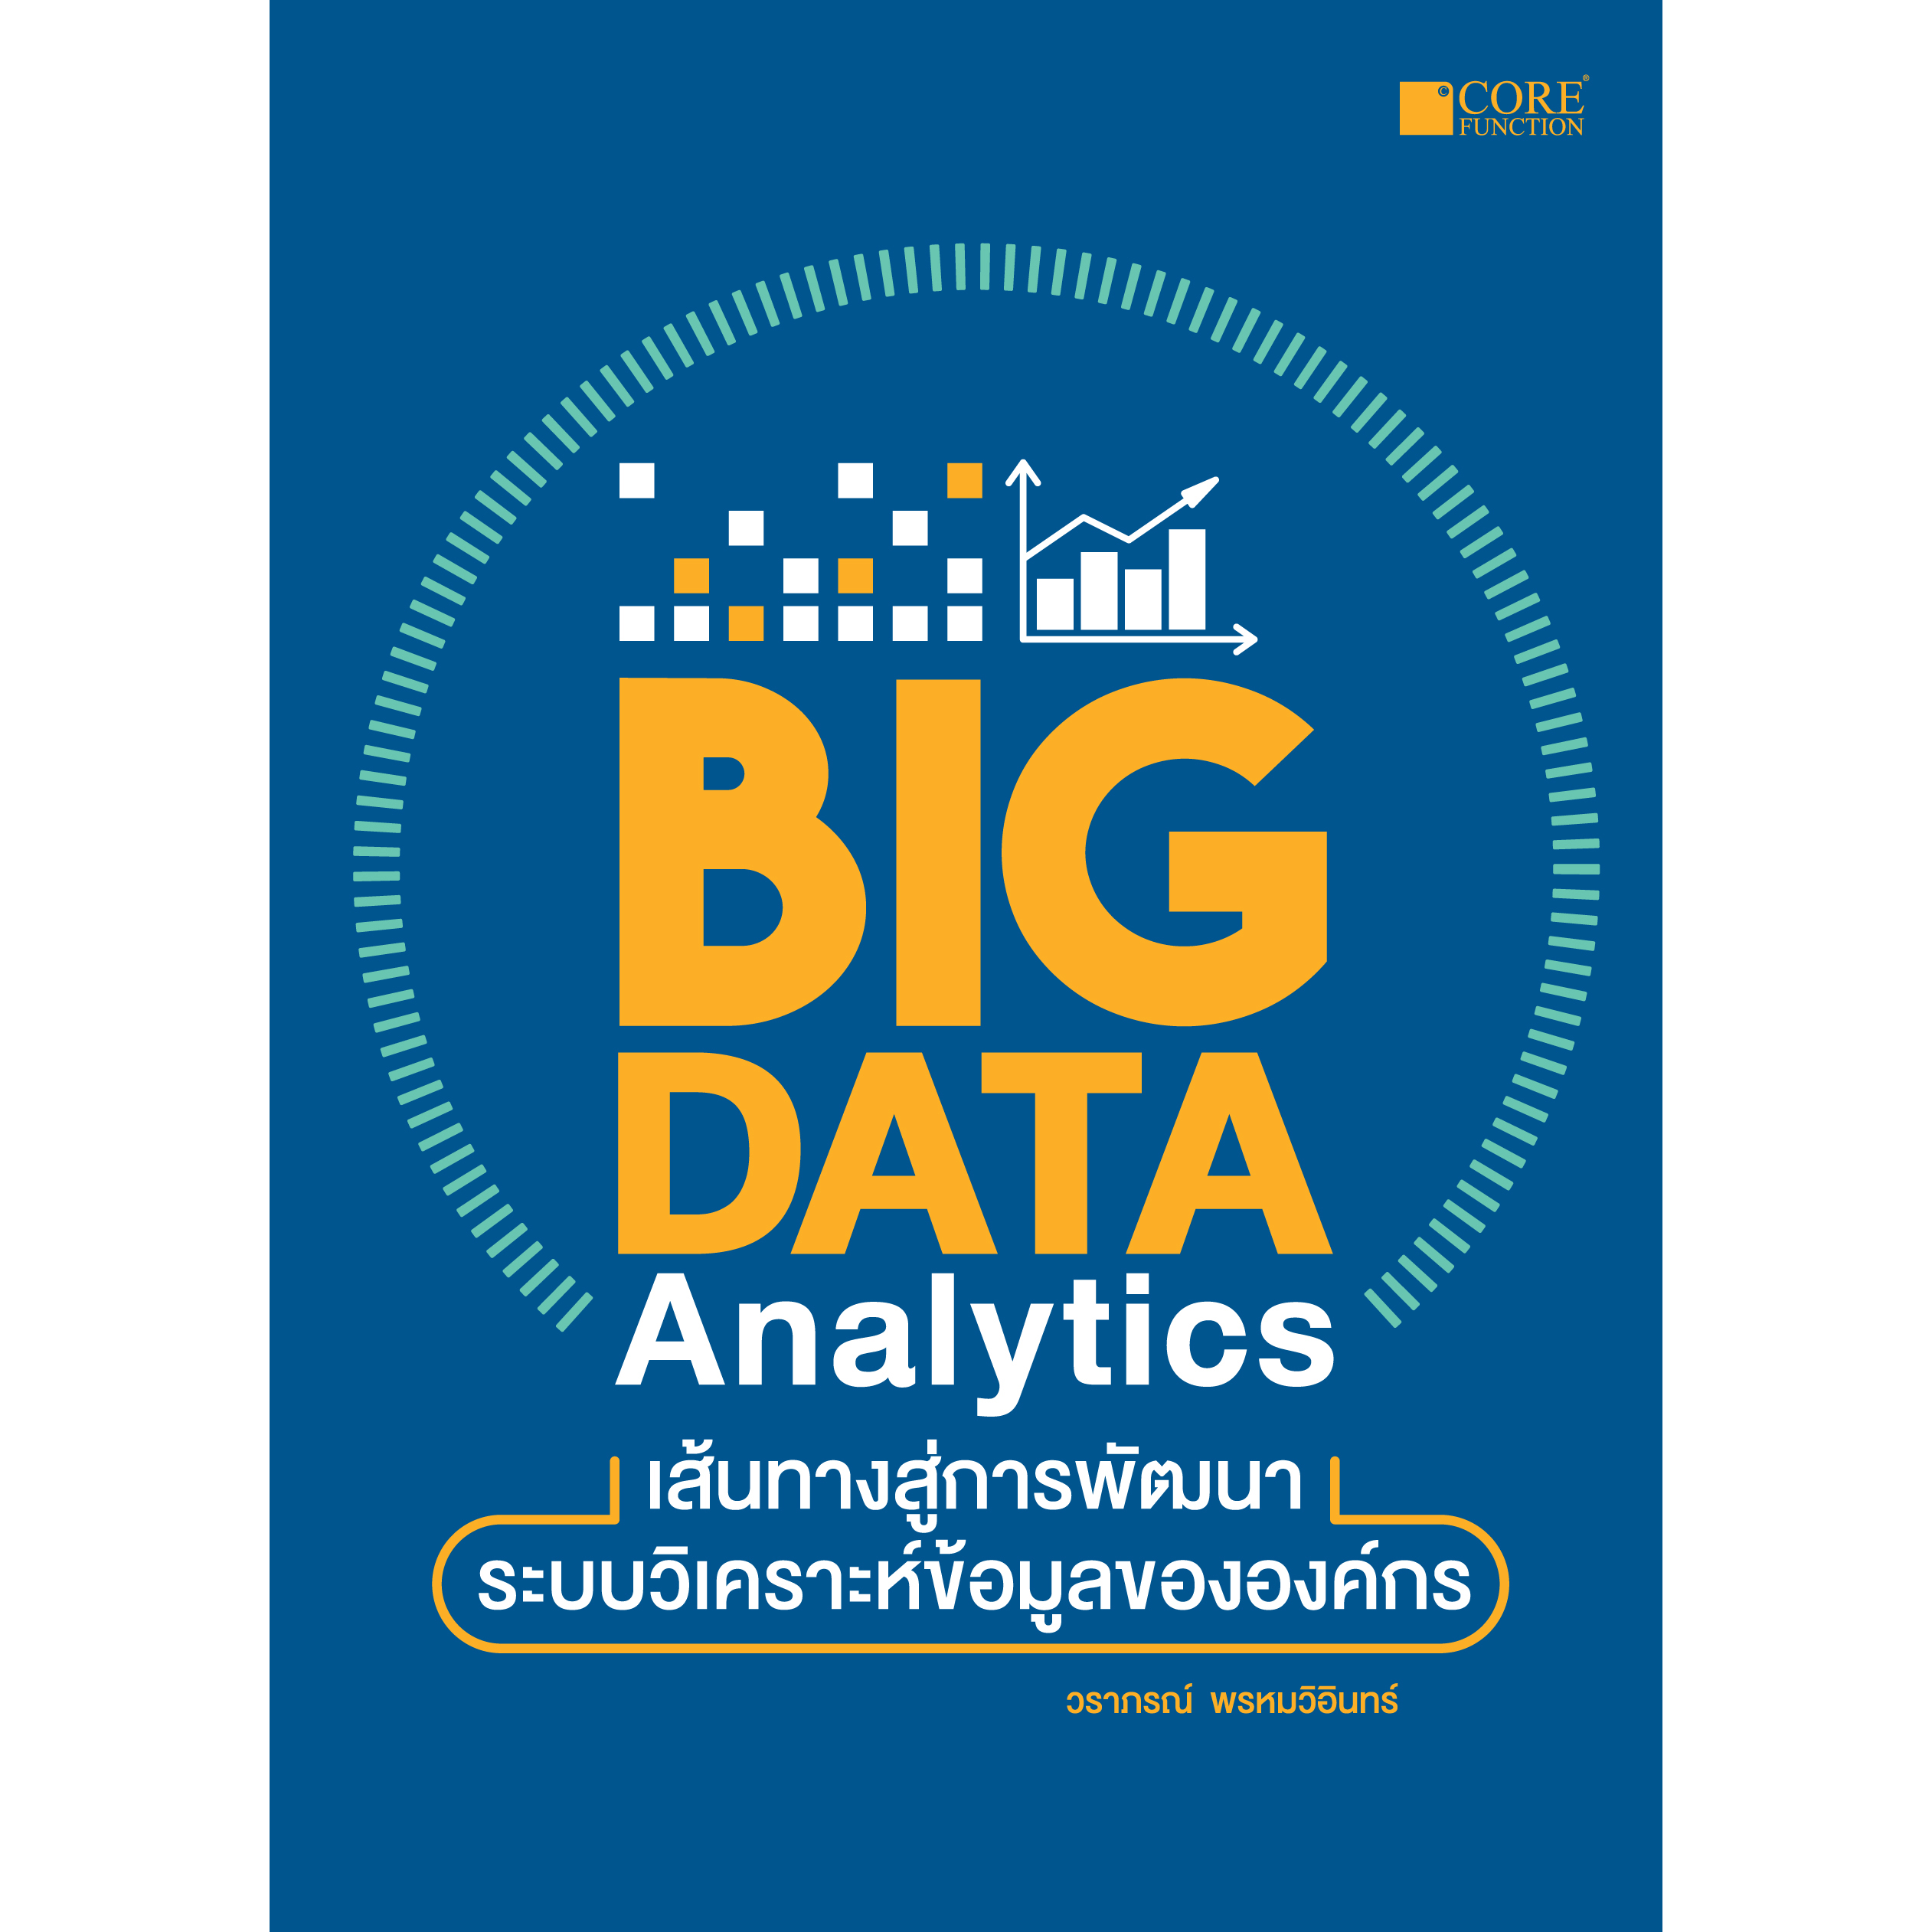 Big Data Analytics เส้นทางสู่การพัฒนาระบบวิเคราะห์ข้อมูลขององค์กร(สภาพ B หนังสือมือ 1)